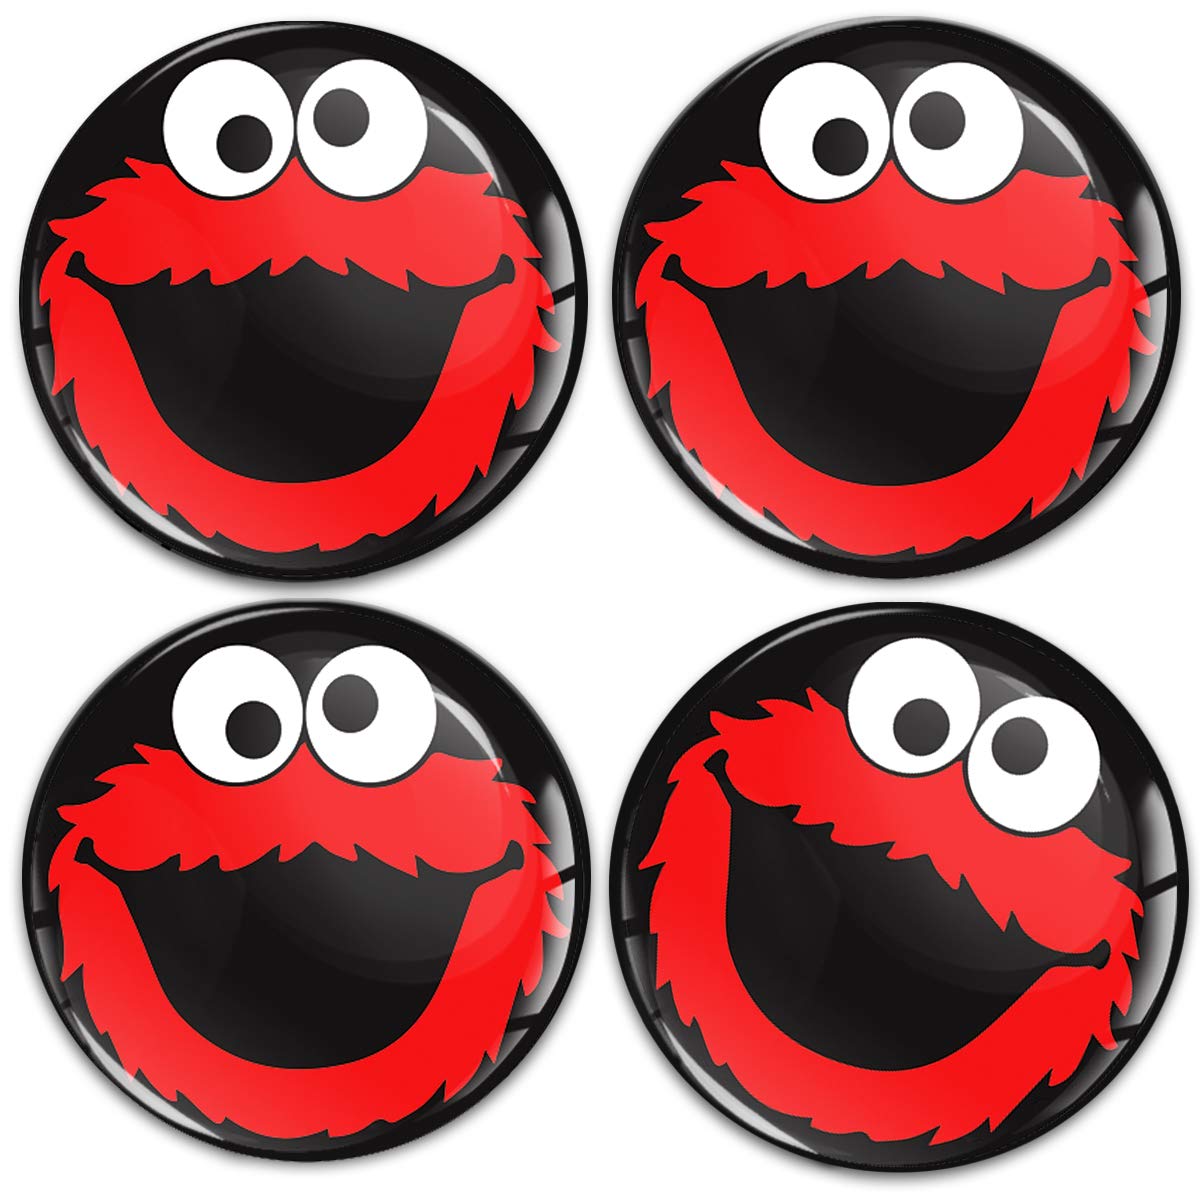 SkinoEu Aufkleber Autoaufkleber für Radkappen Nabenkappen Nabendeckel Radnabendeckel Rad-Aufkleber 50mm Schwarz Rot Cookie Monster A 5950 von Skino